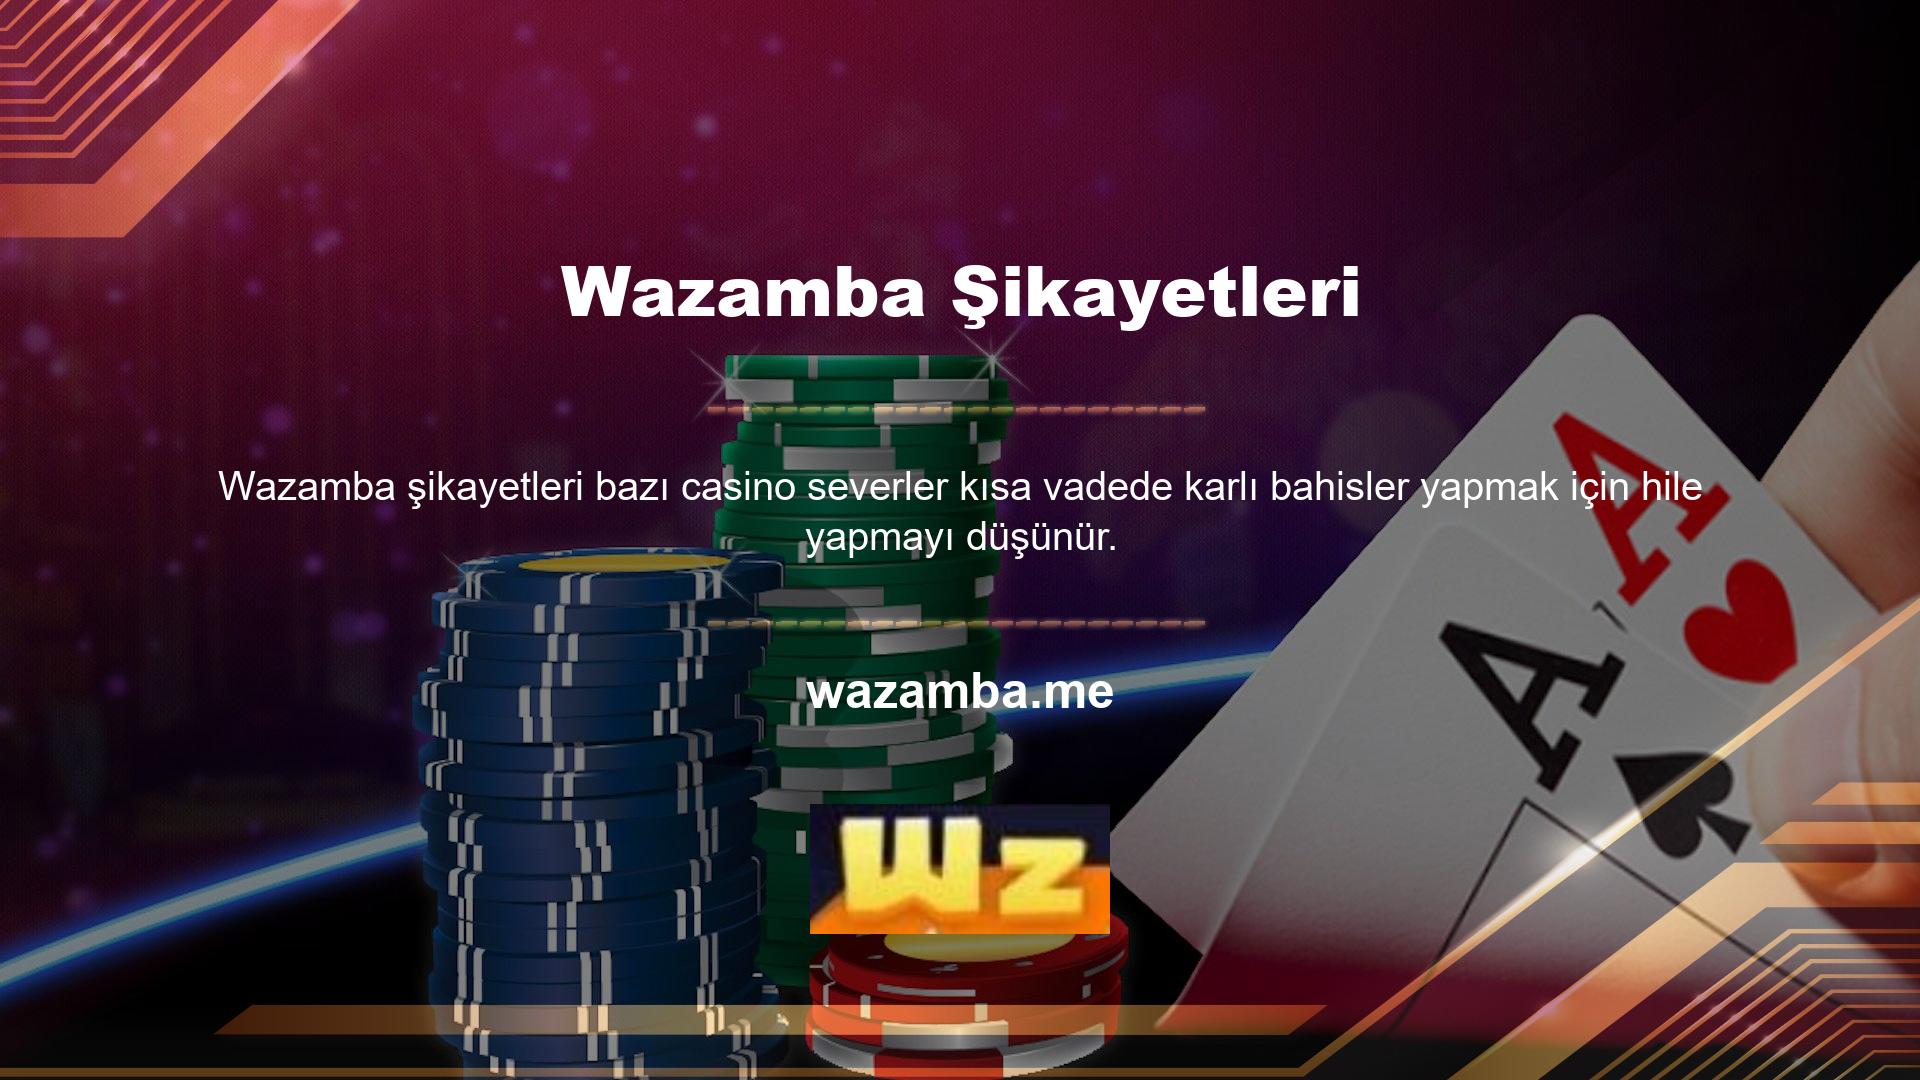 Wazamba Canlı Casino'da hile var mı diye sorulduğunda site direkt olarak “hayır” diyor